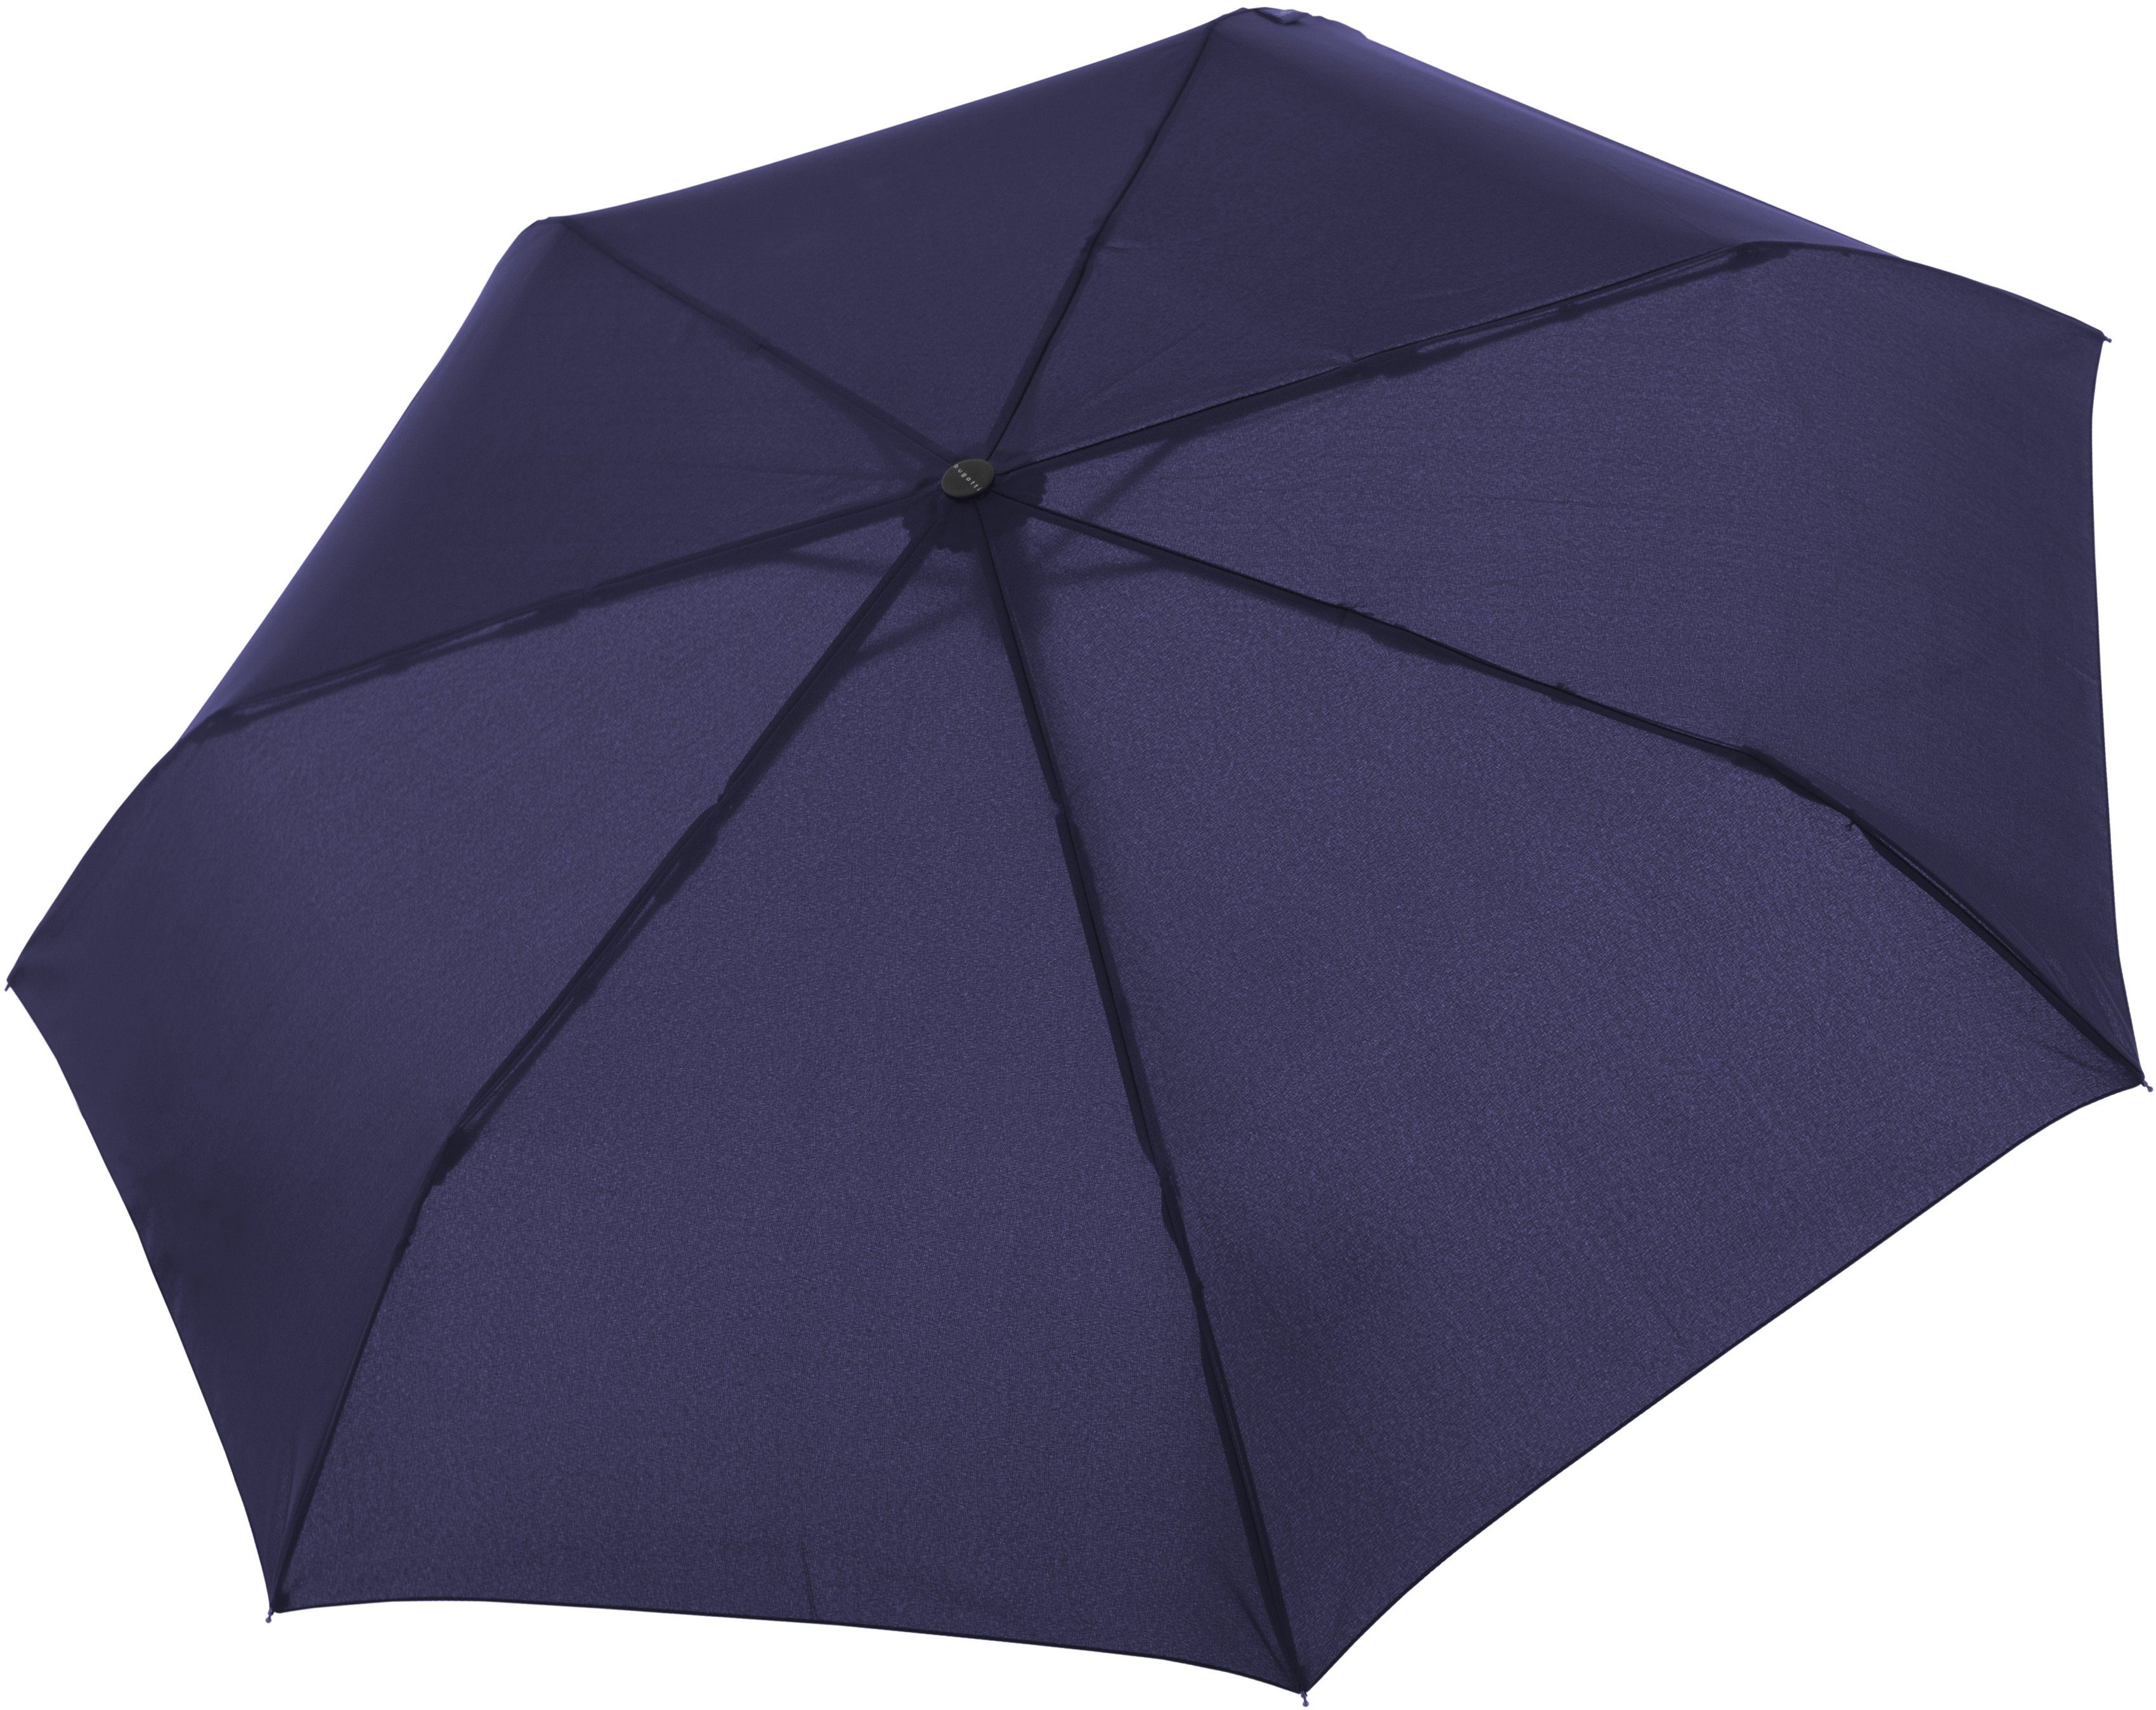 Taschenregenschirm für Herren navy, Mate, bugatti uni